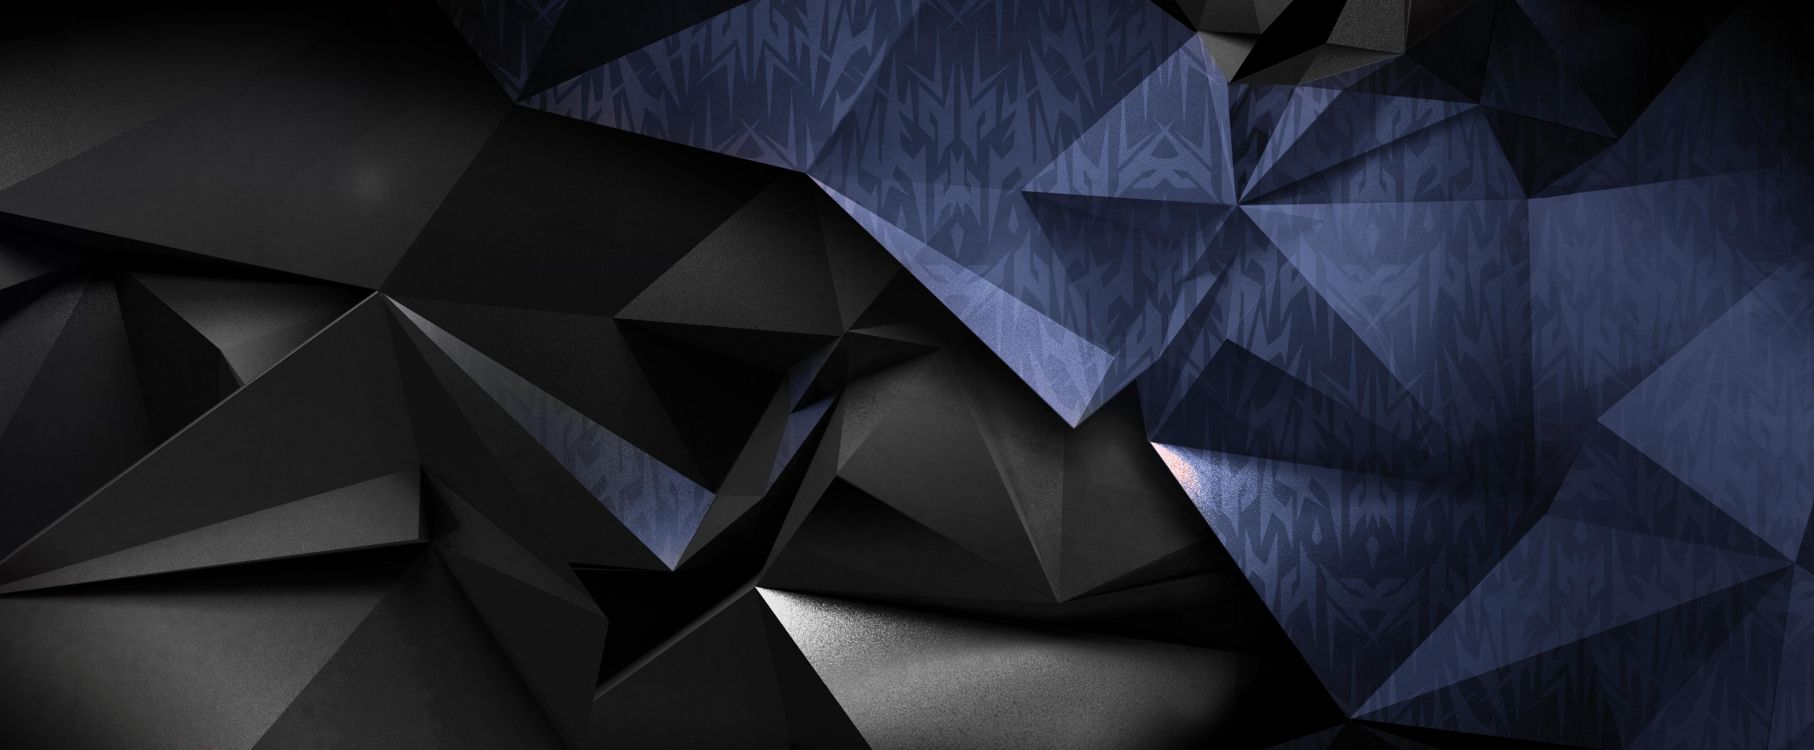 Arte Abstracto Azul y Negro. Wallpaper in 5064x2093 Resolution